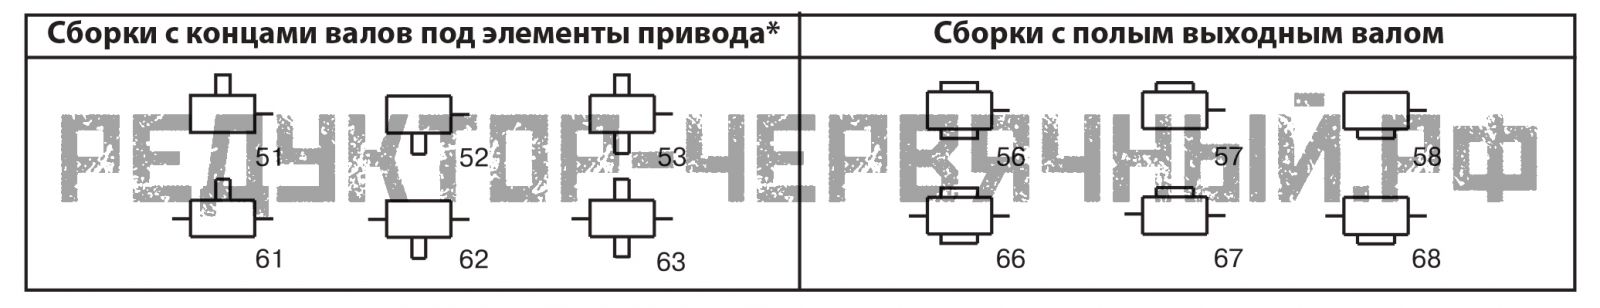 Схема сборки редукторов РЧУ